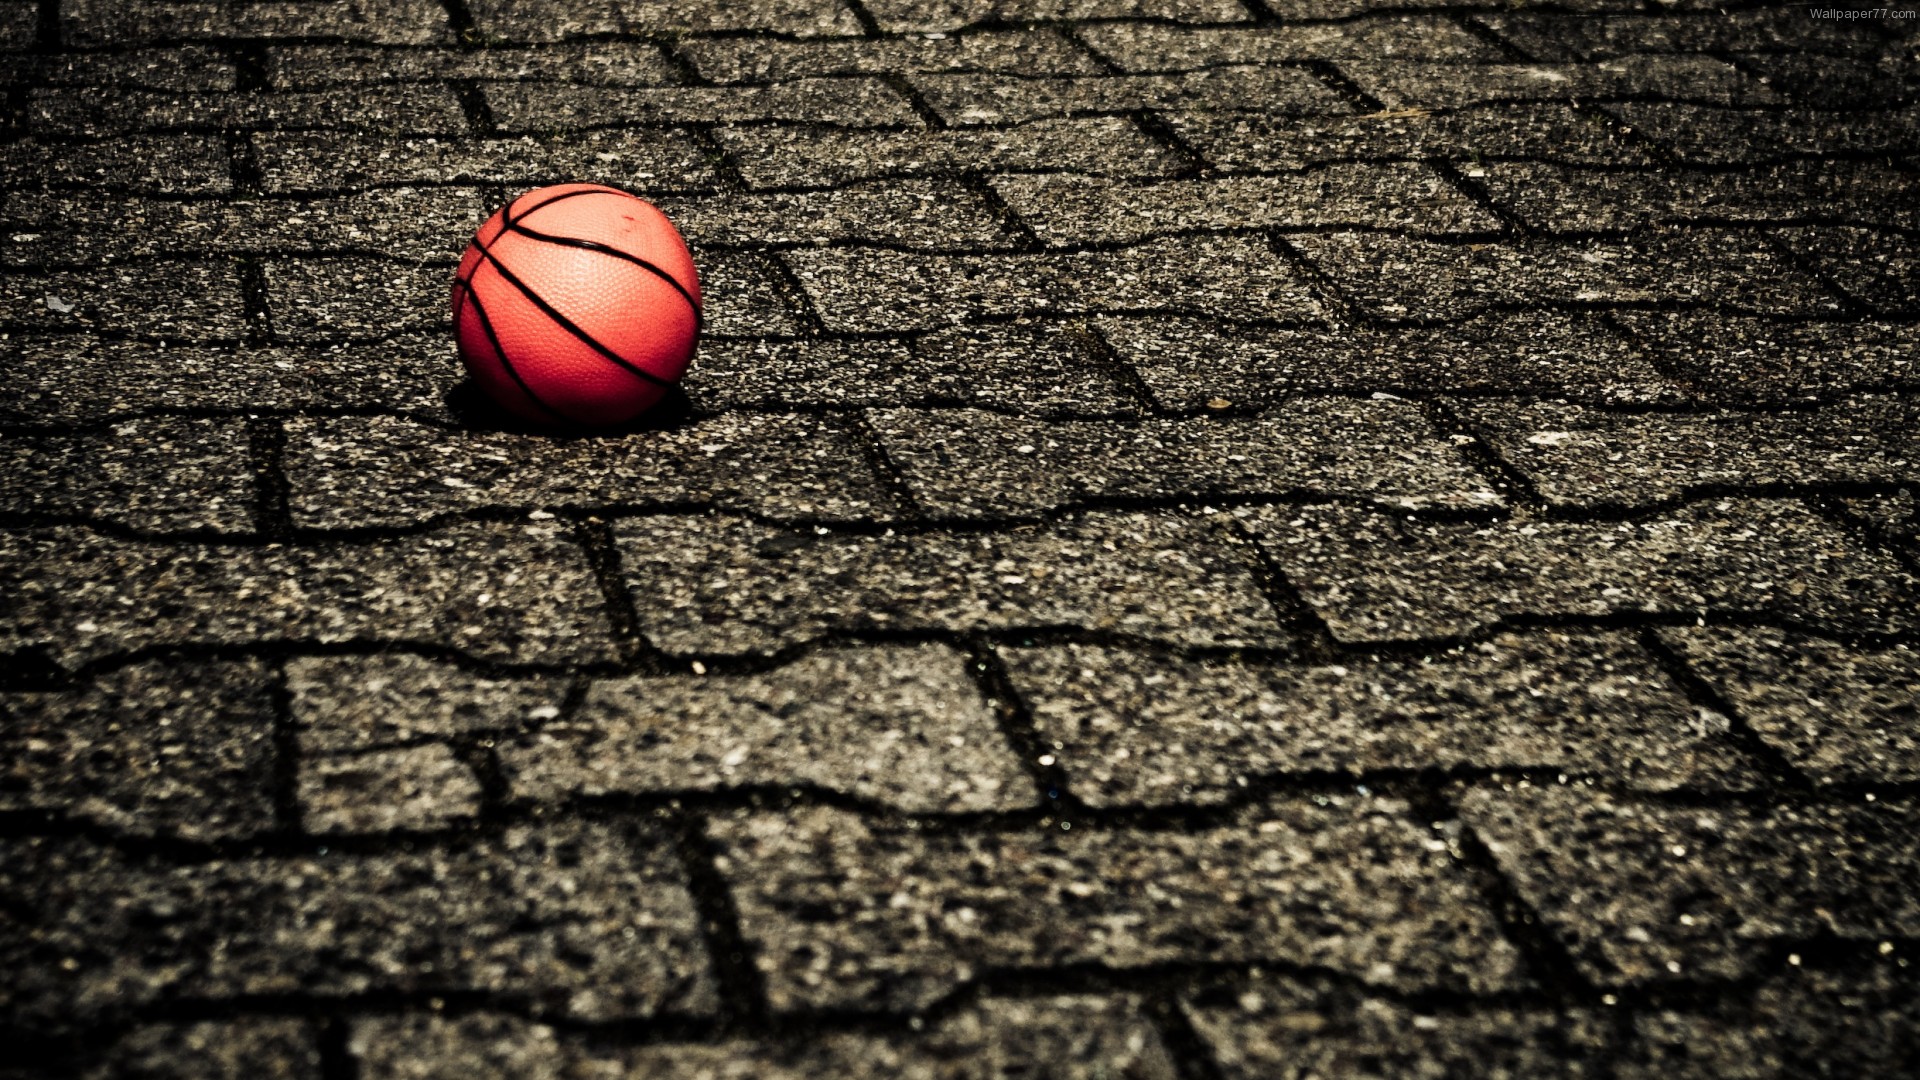 Dream Basketball: Dunk & Hoop